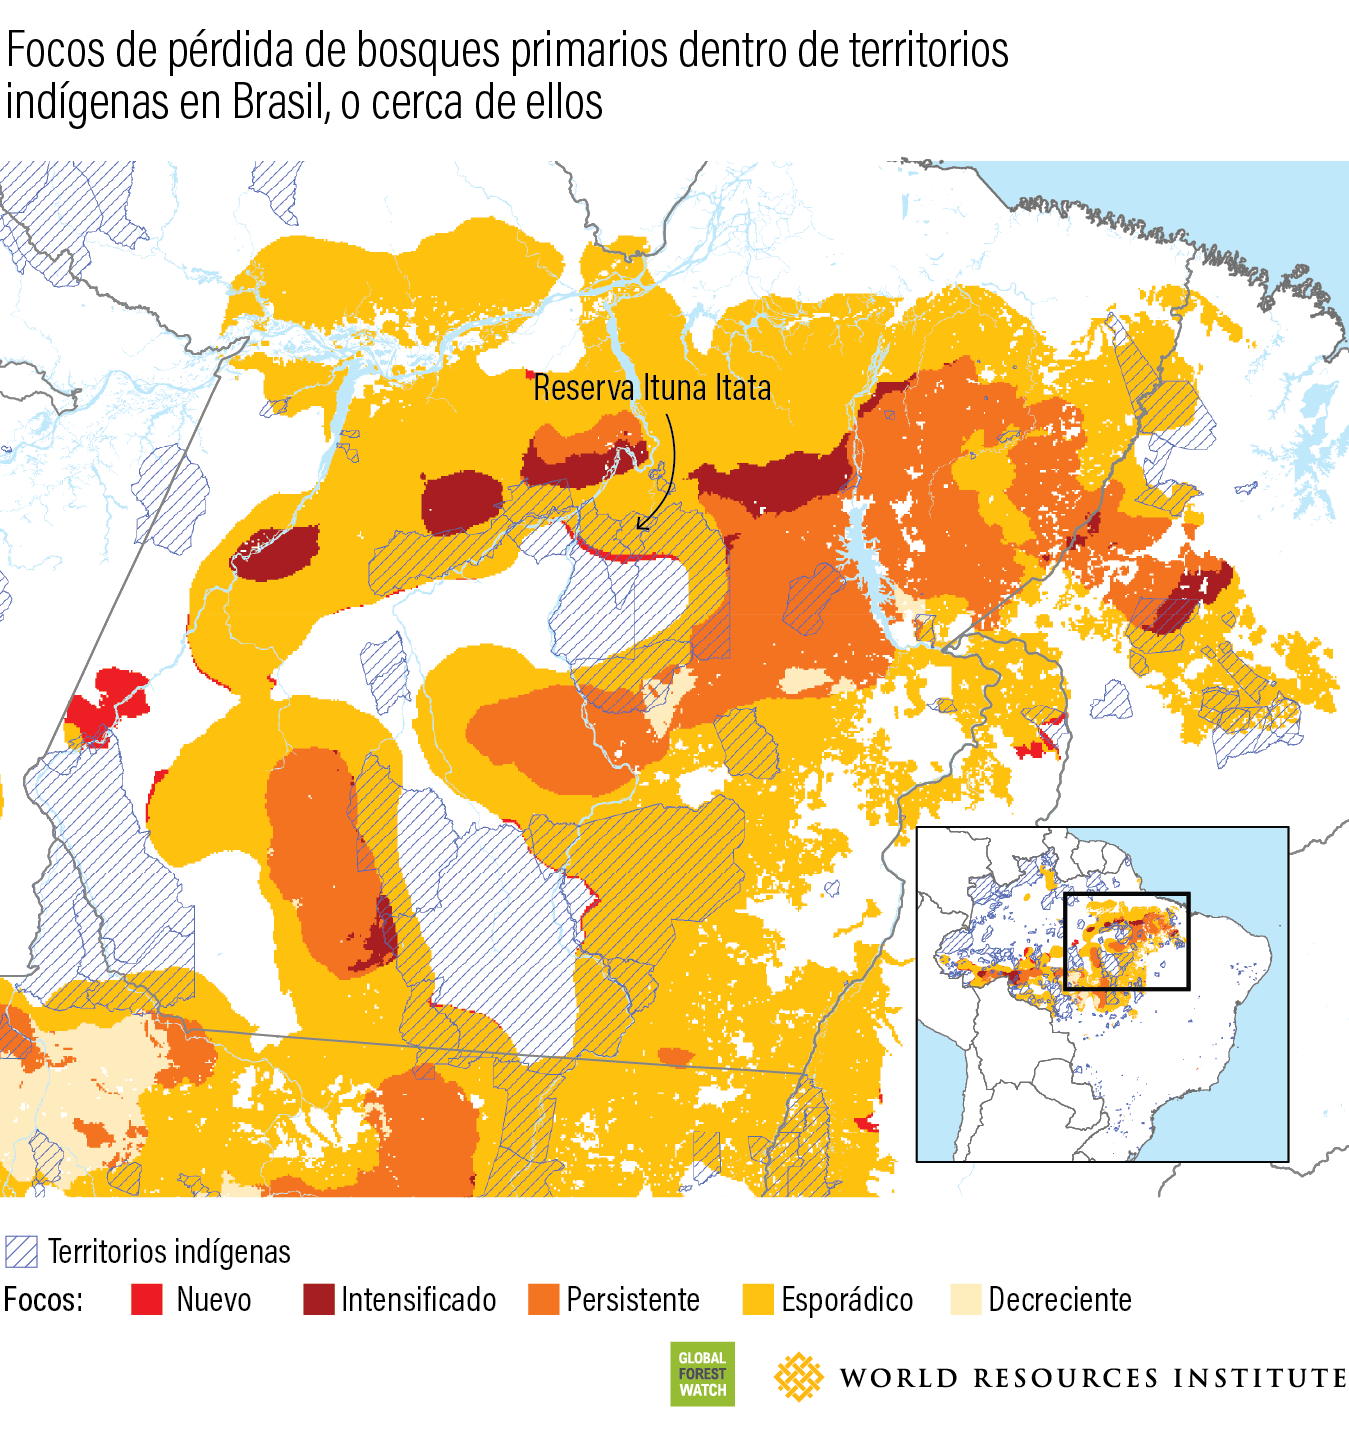 Focos de perdida de bosques primarios dentro de territorios indigenas en brasil, o cerca de ellos